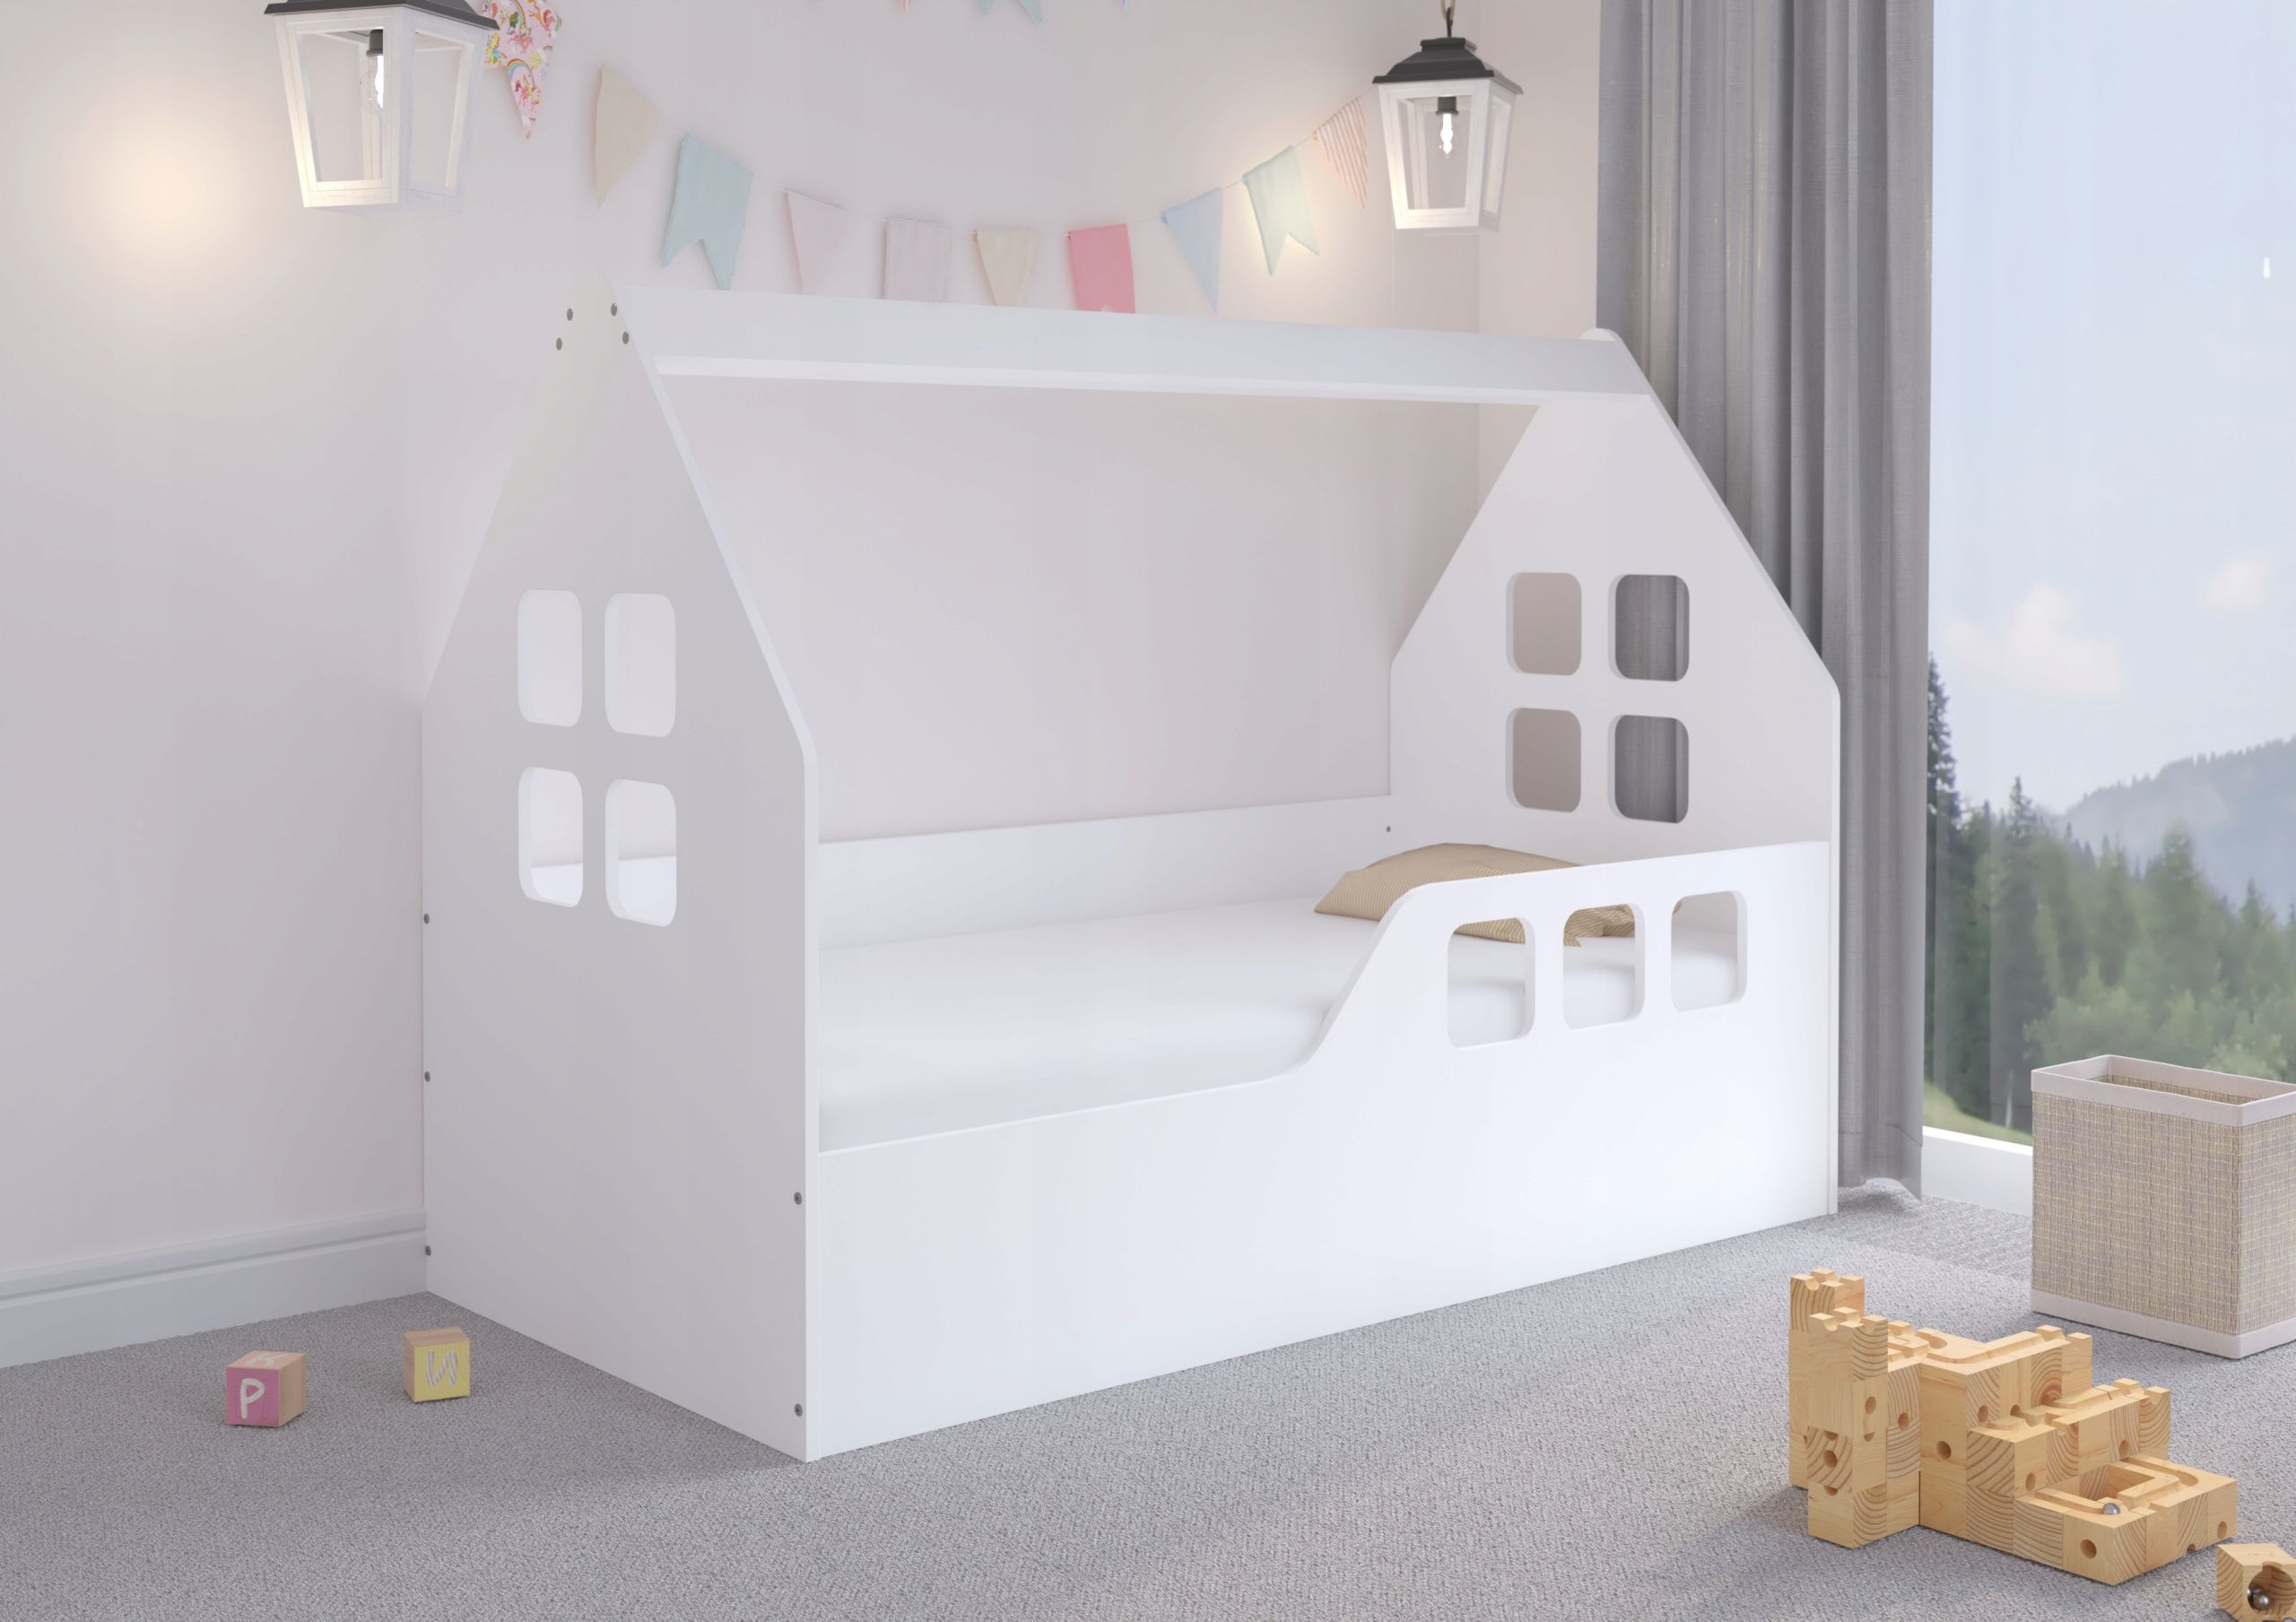 Detská domčeková posteľ KIDHOUSE - biela - pravá - 160x80 cm